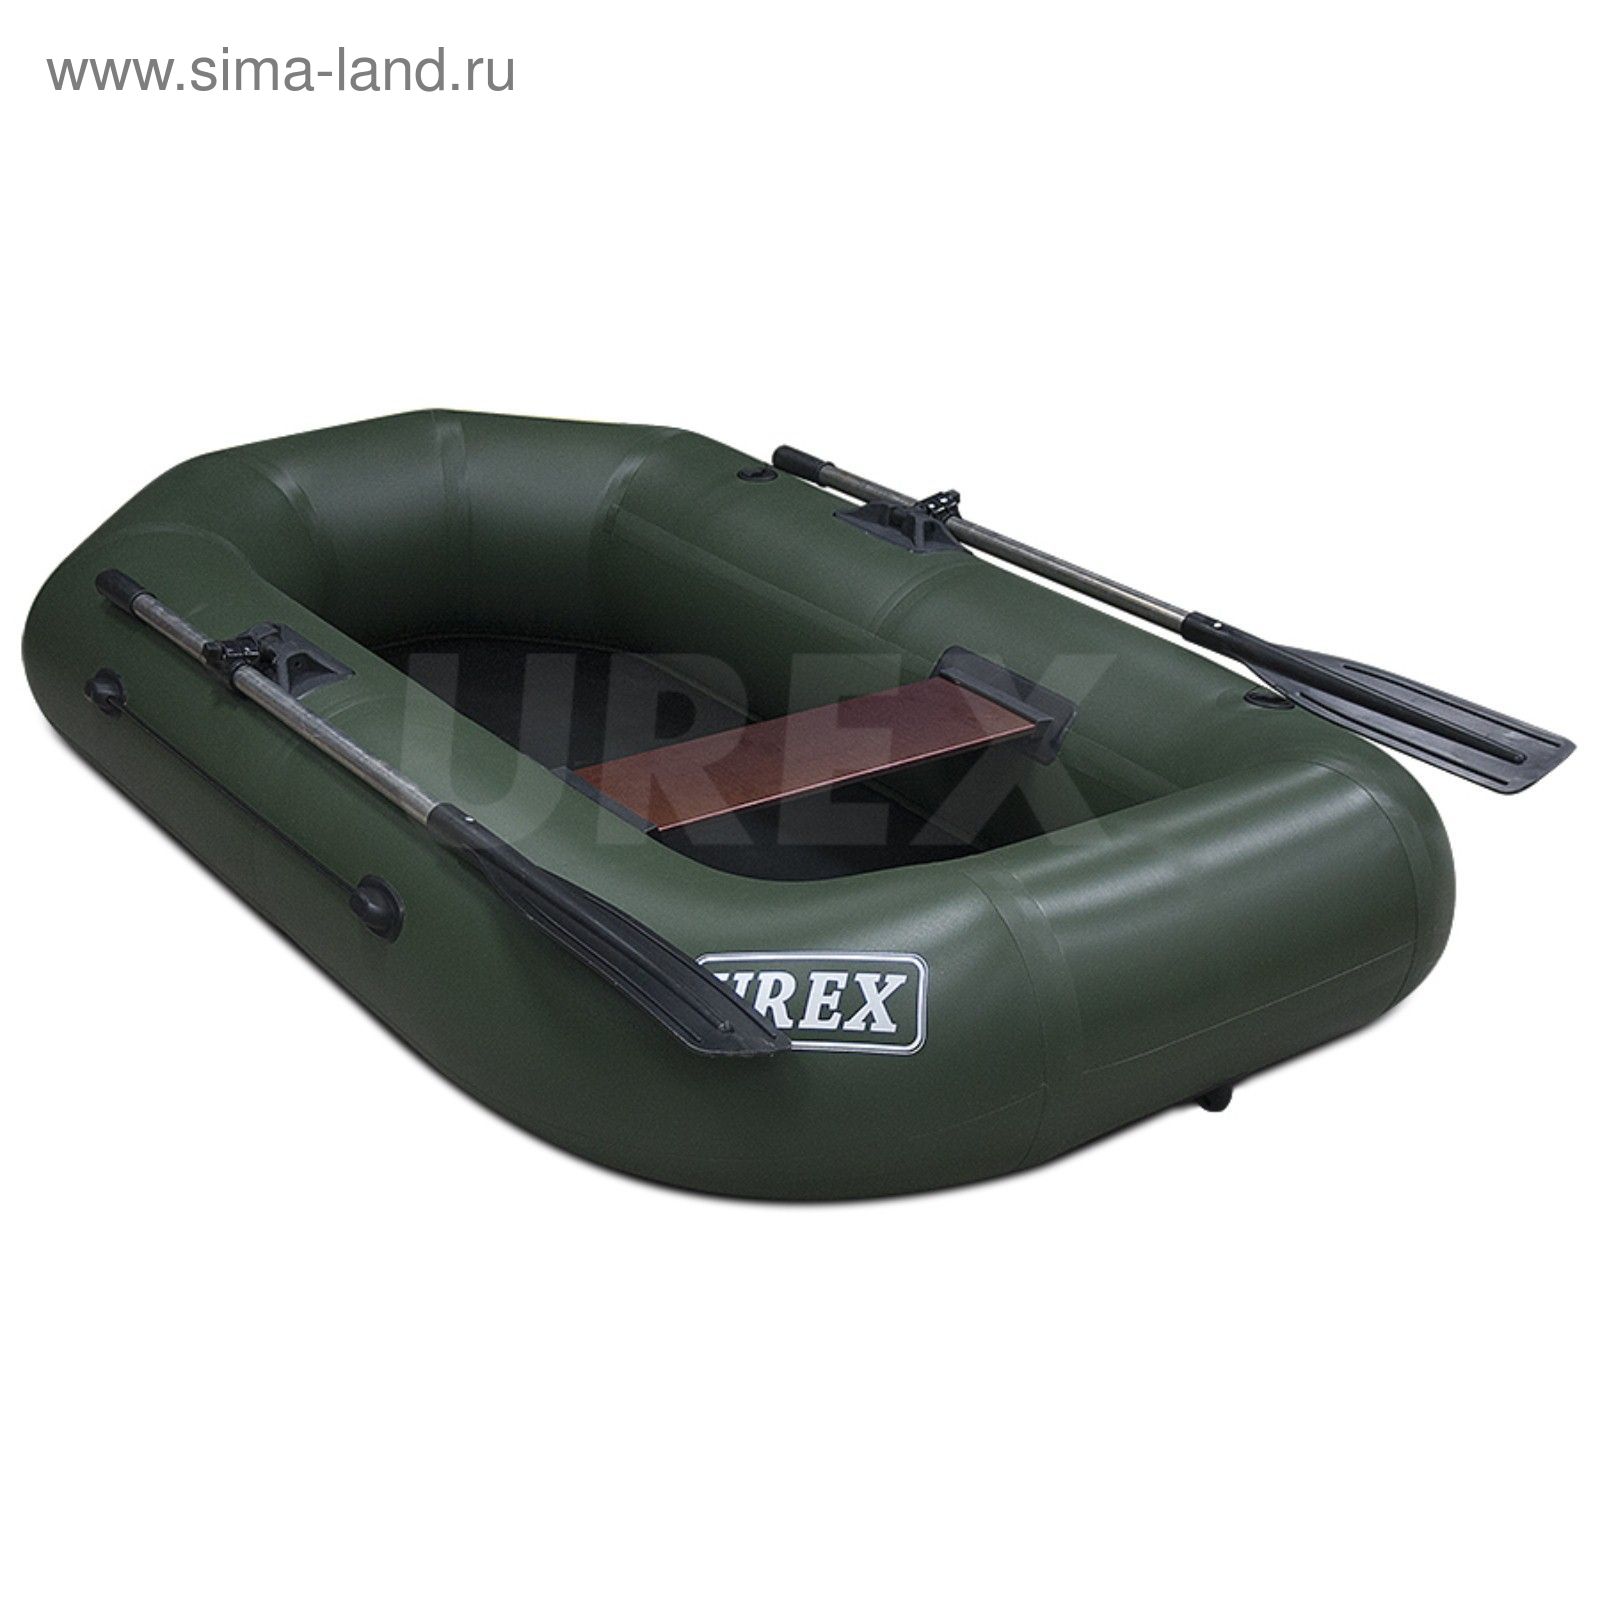 Лодка надувная "UREX-20"